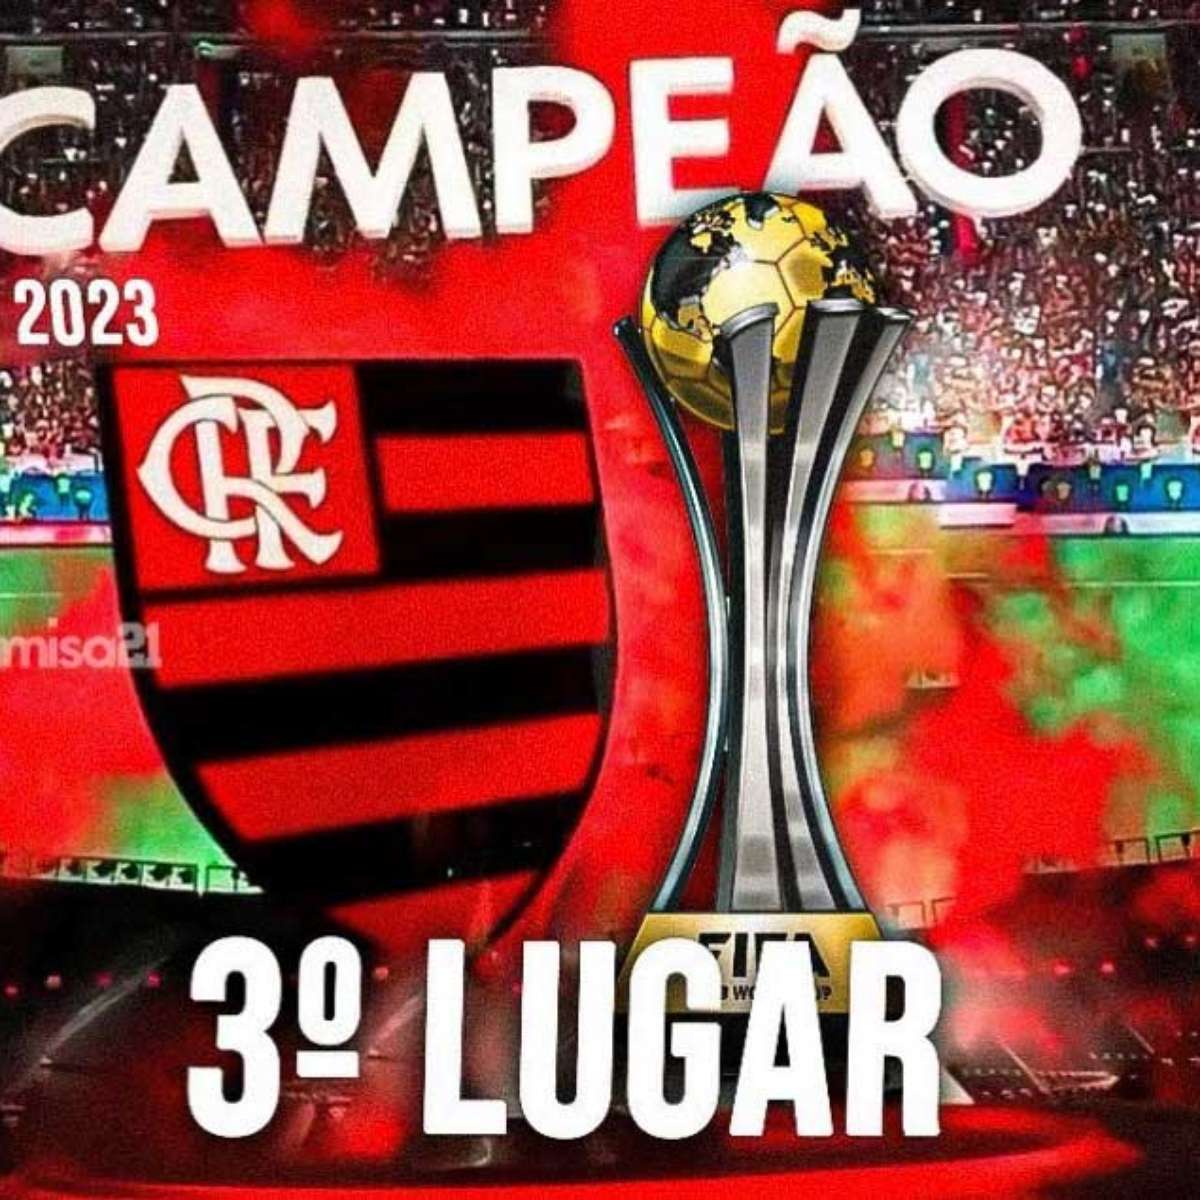 Flamengo é zoado por rivais após terceiro lugar no Mundial; veja memes -  Superesportes